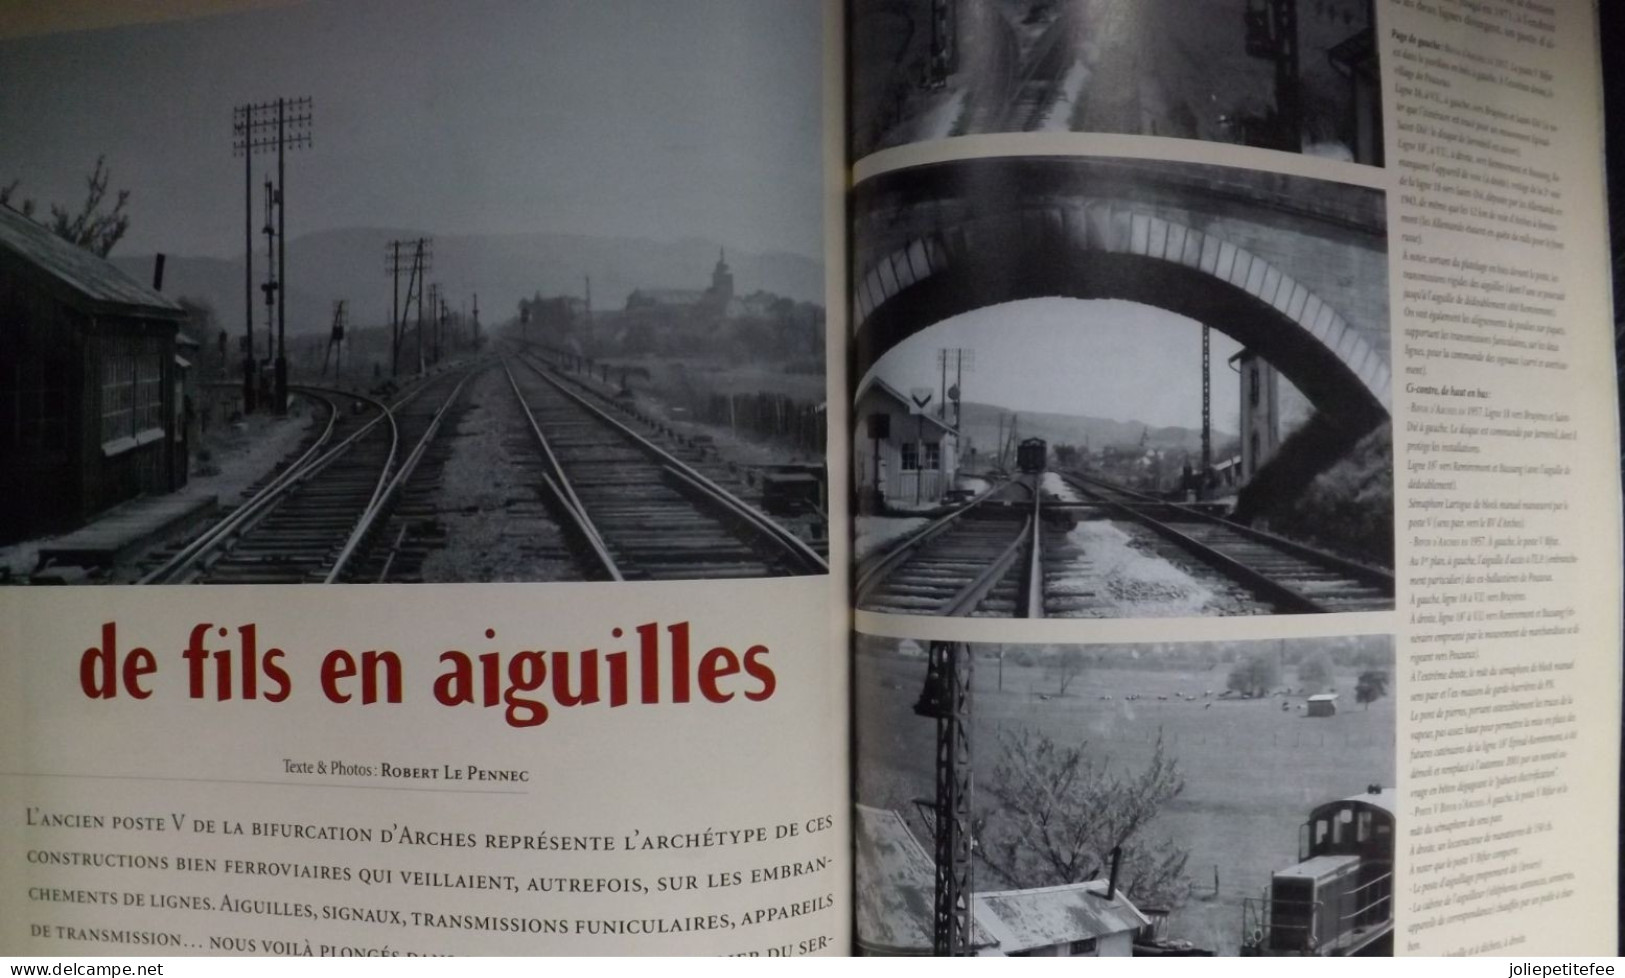 N°8 - 2003:  Revue. CORRESPONDANCES FERROVIAIRES. Itinéraire: La Banlieu PLM. - Trenes